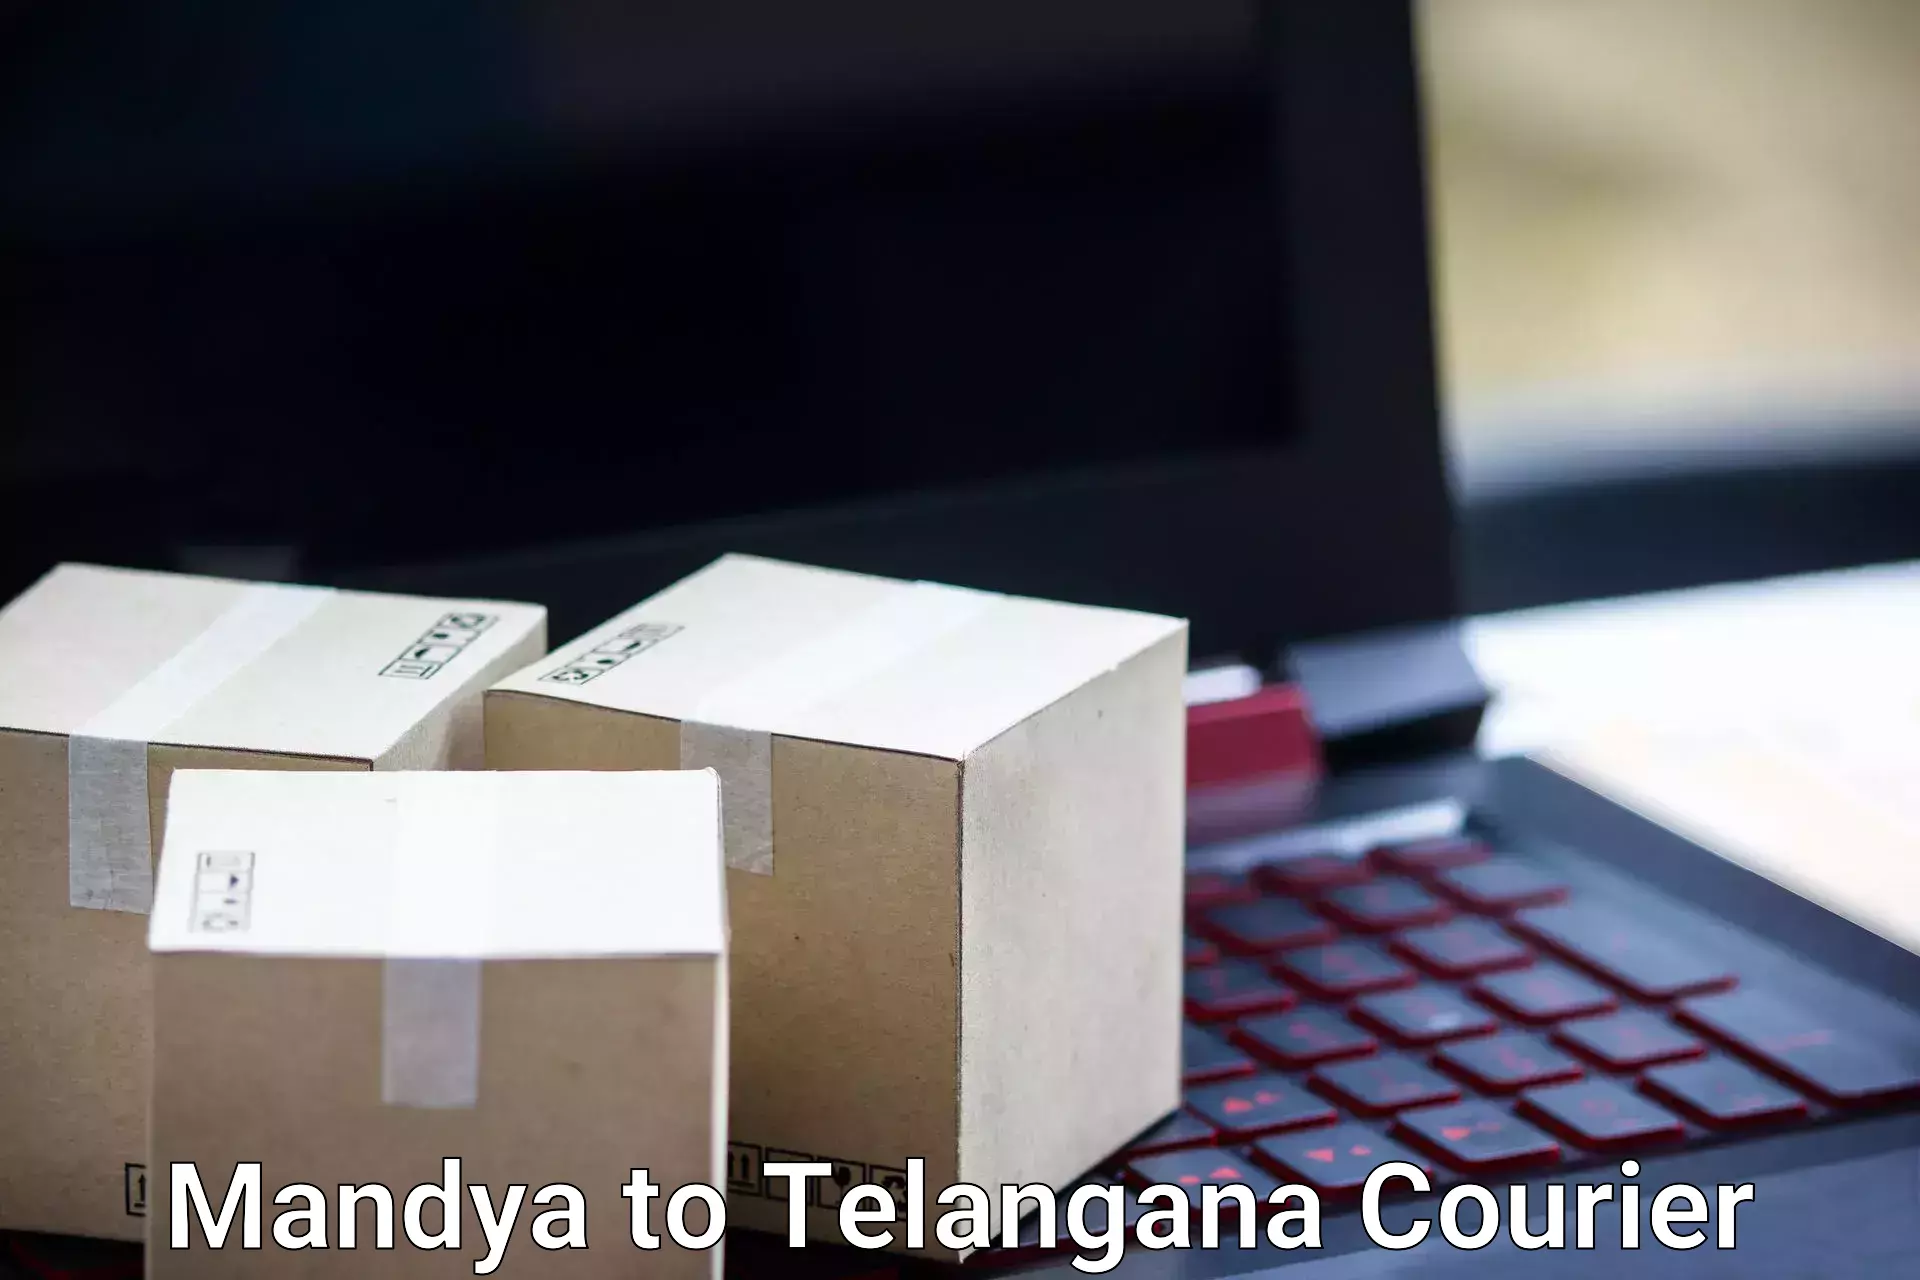 Urgent luggage shipment in Mandya to Yellareddy